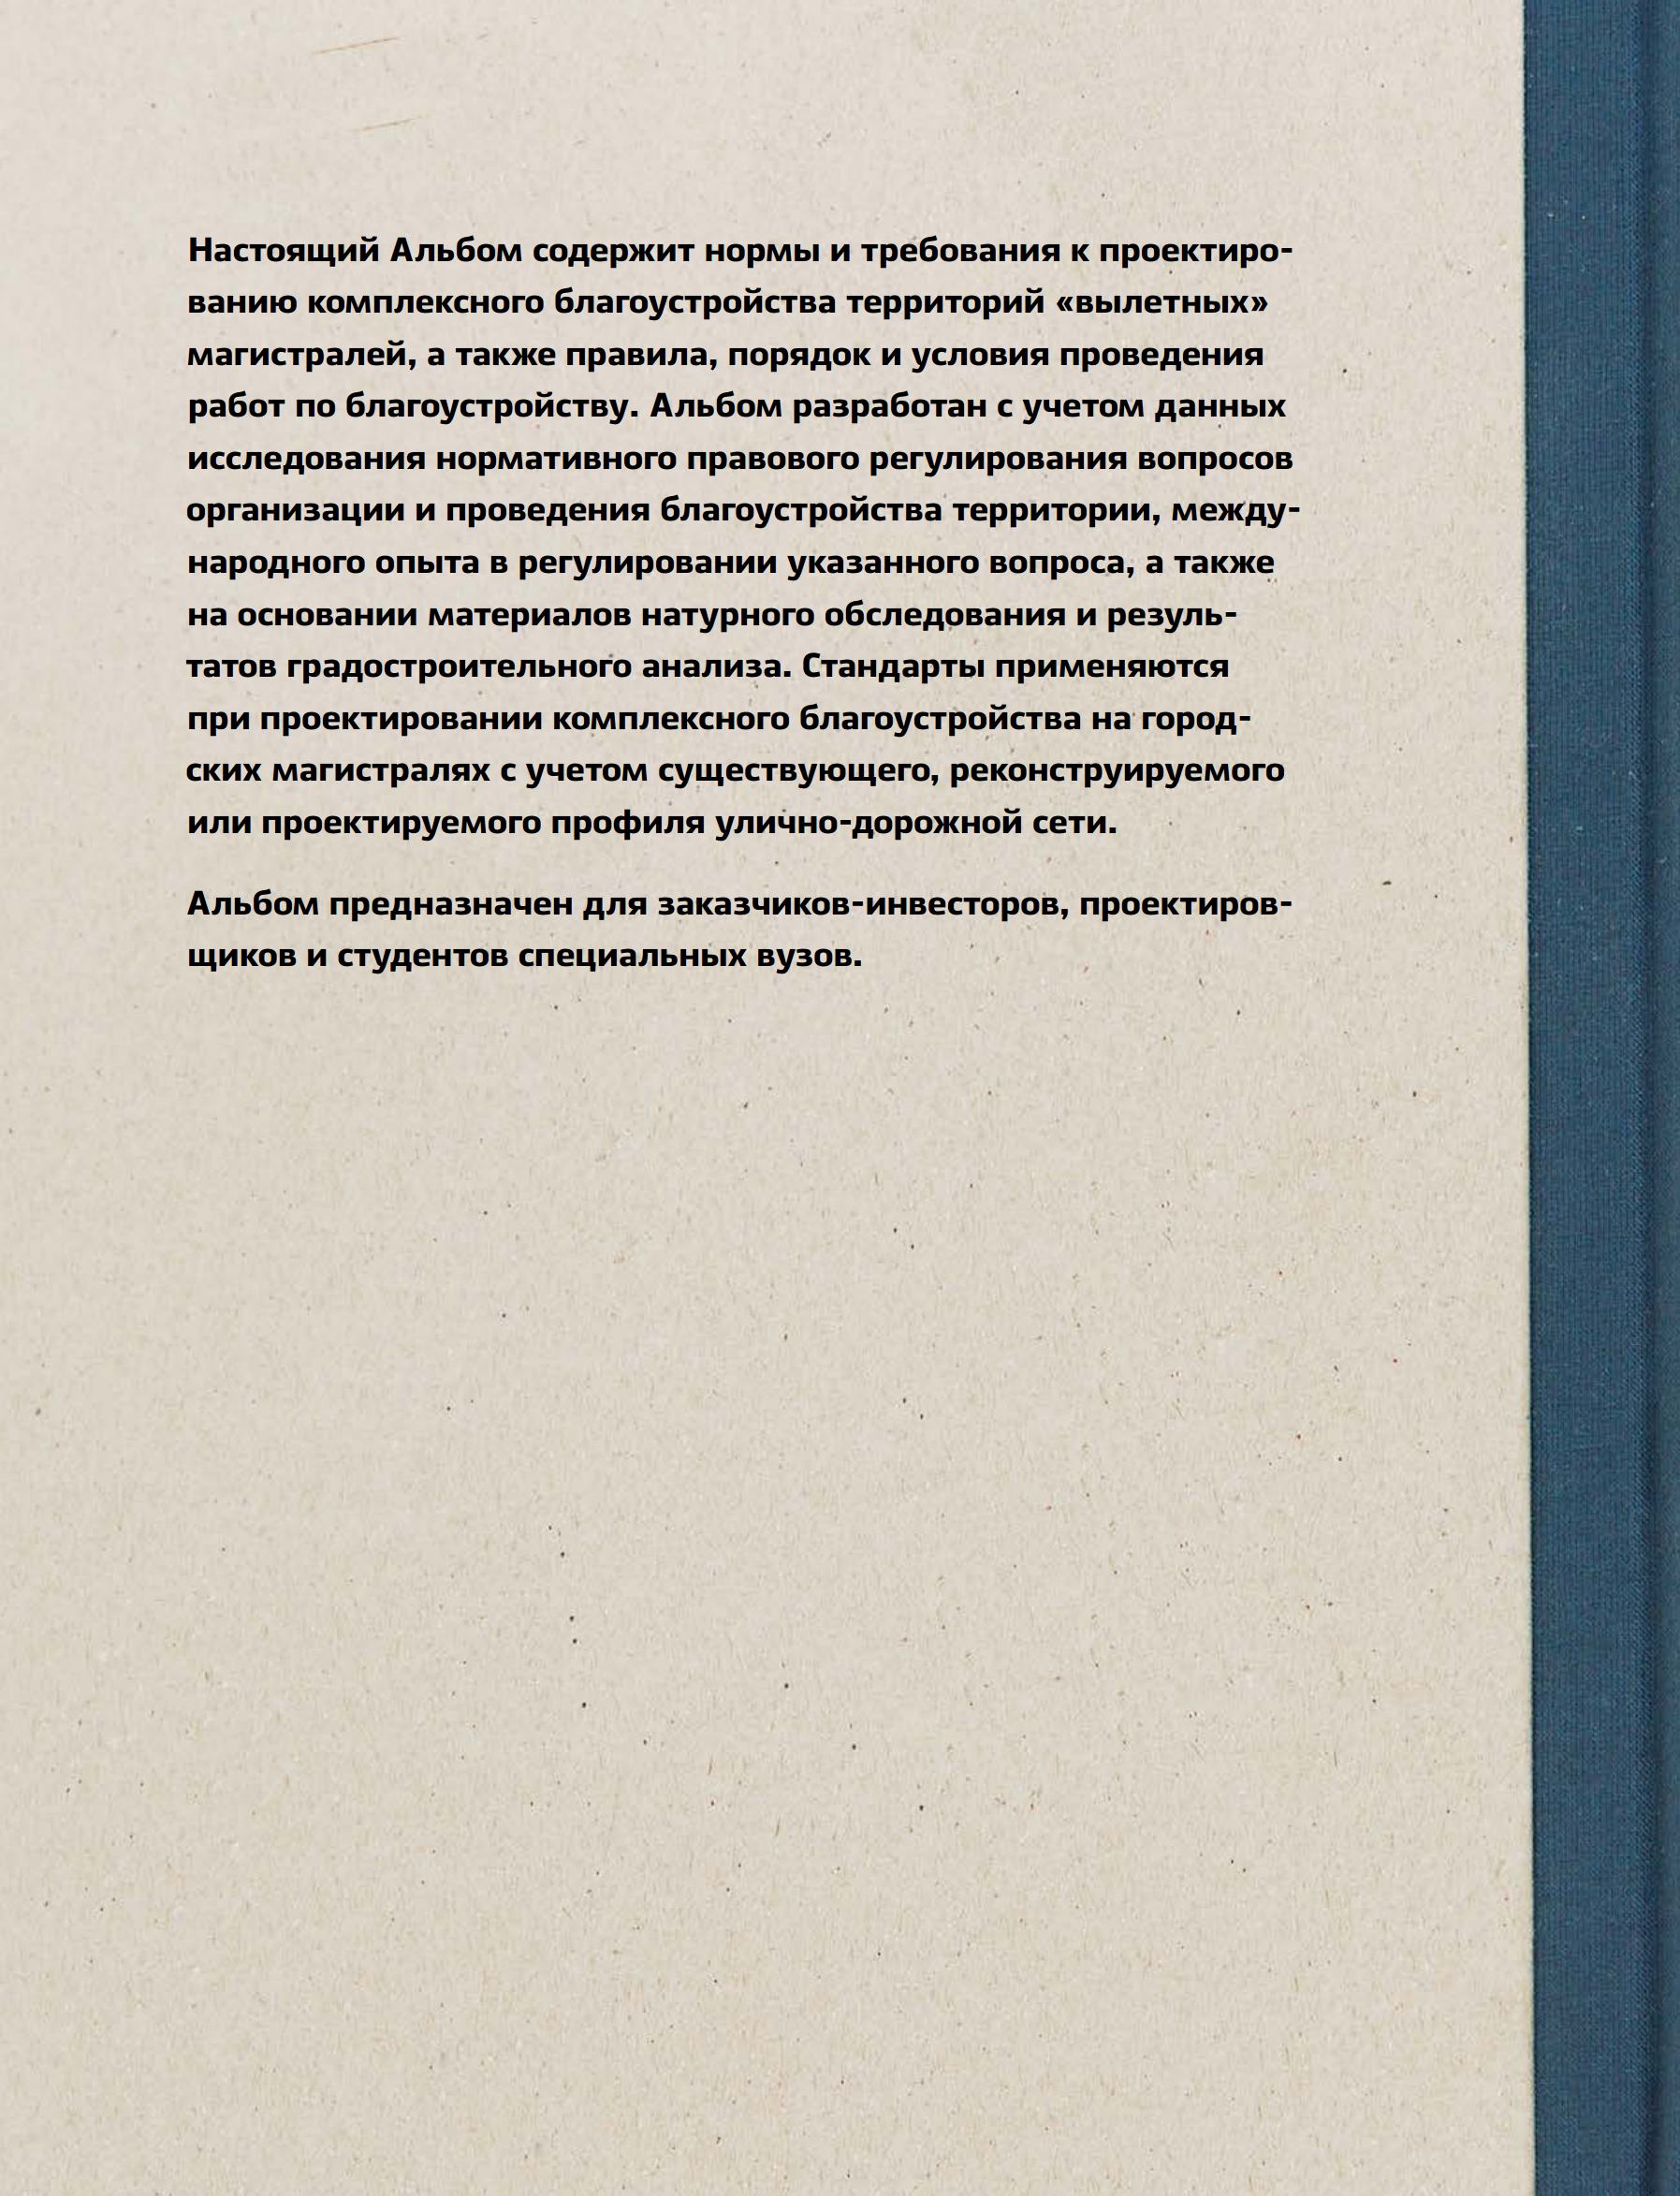 Альбом типовых решений (стандартов) комплексного благоустройства территории «вылетных» магистралей города Москвы